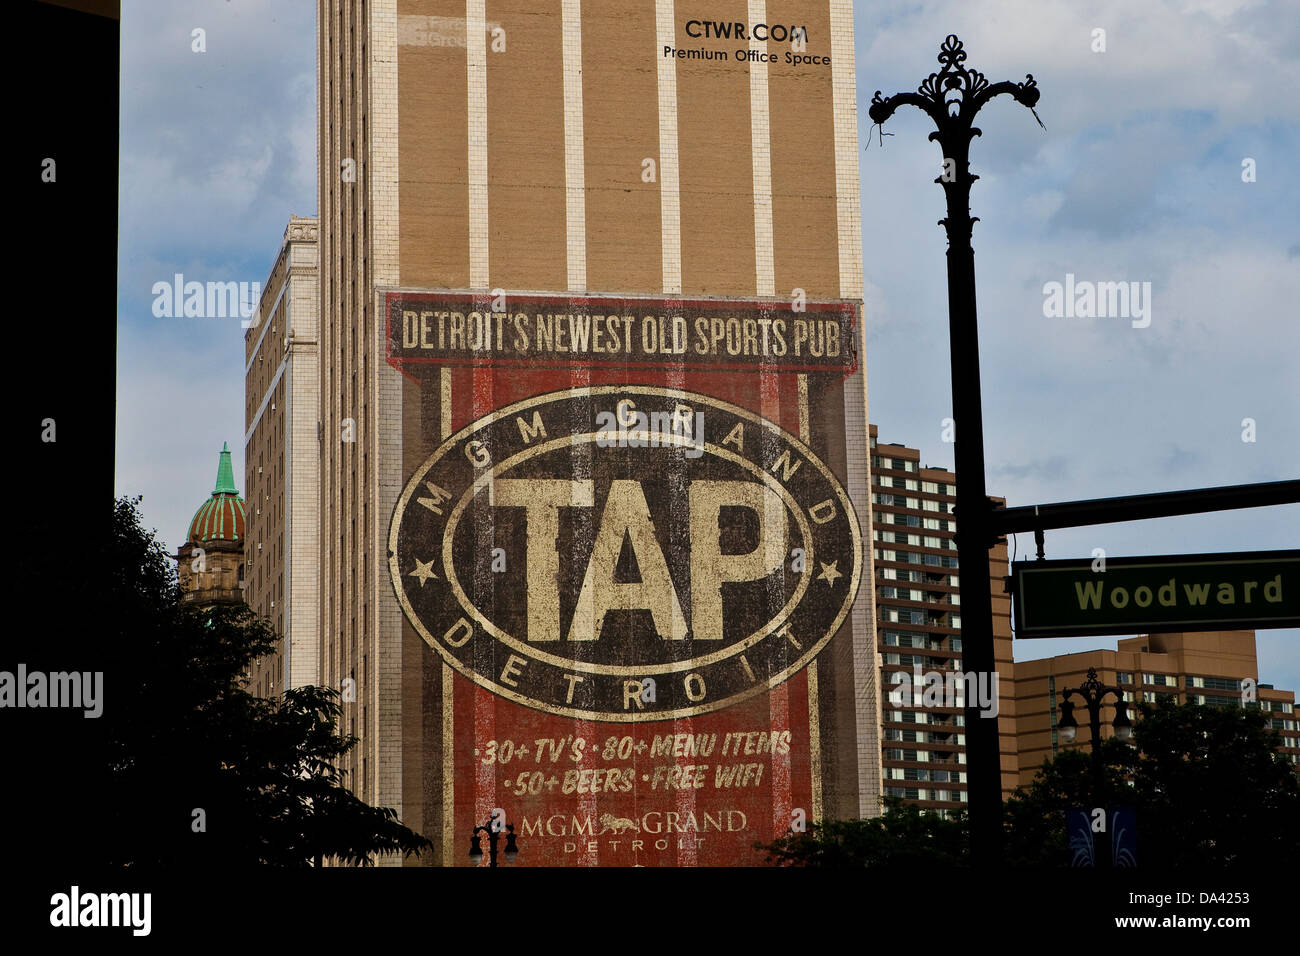 Un anuncio mural para MGM Grand toca sports pub es visto en Detroit (Mi) Foto de stock